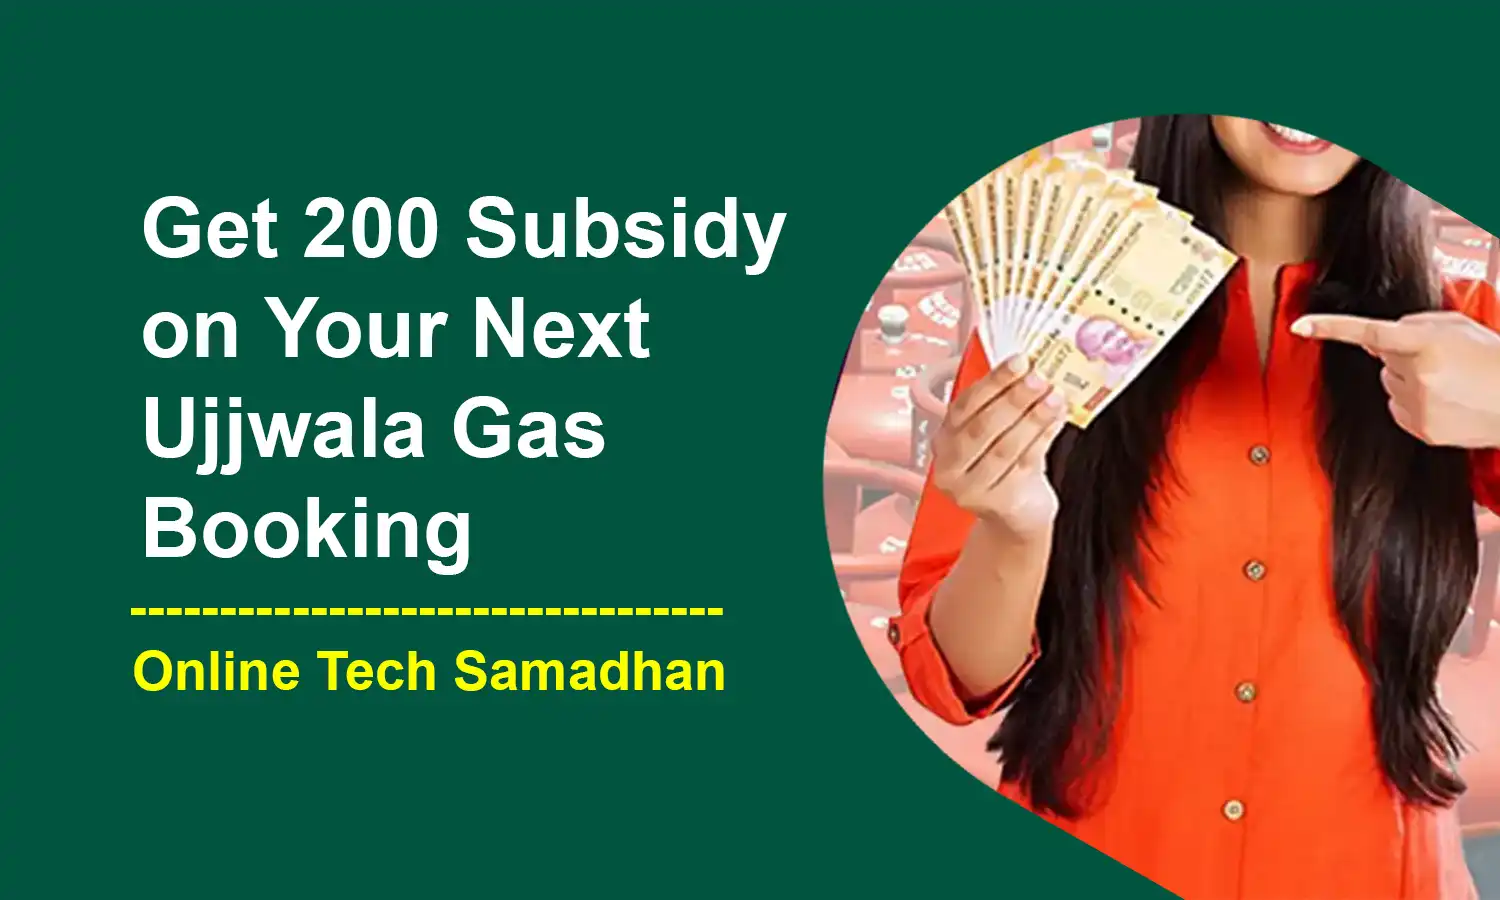 Ujjwala Gas Subsidy